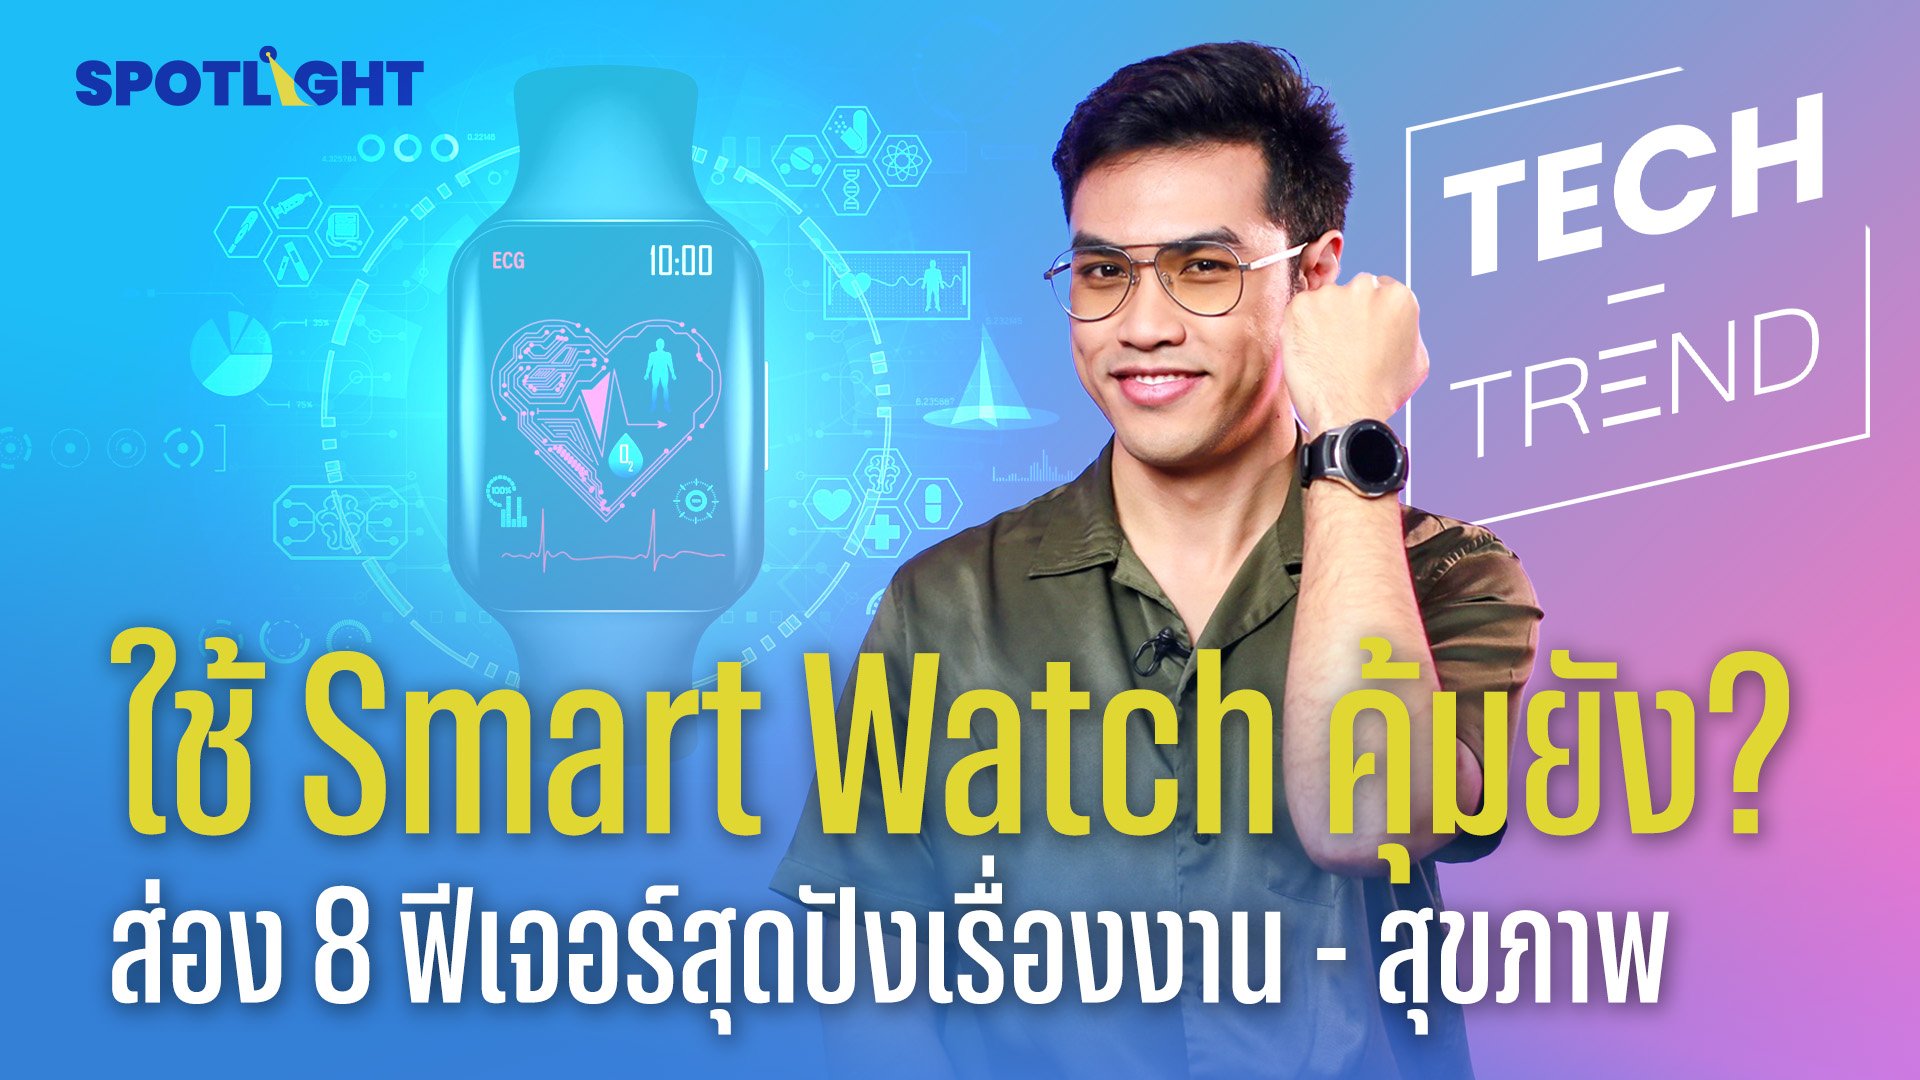 ใช้ Smart Watch คุ้มยัง? ส่อง 3 ฟีเจอร์สุดปังเรื่องสุขภาพ  | Spotlight | 25 ก.ค. 66 | AMARIN TVHD34